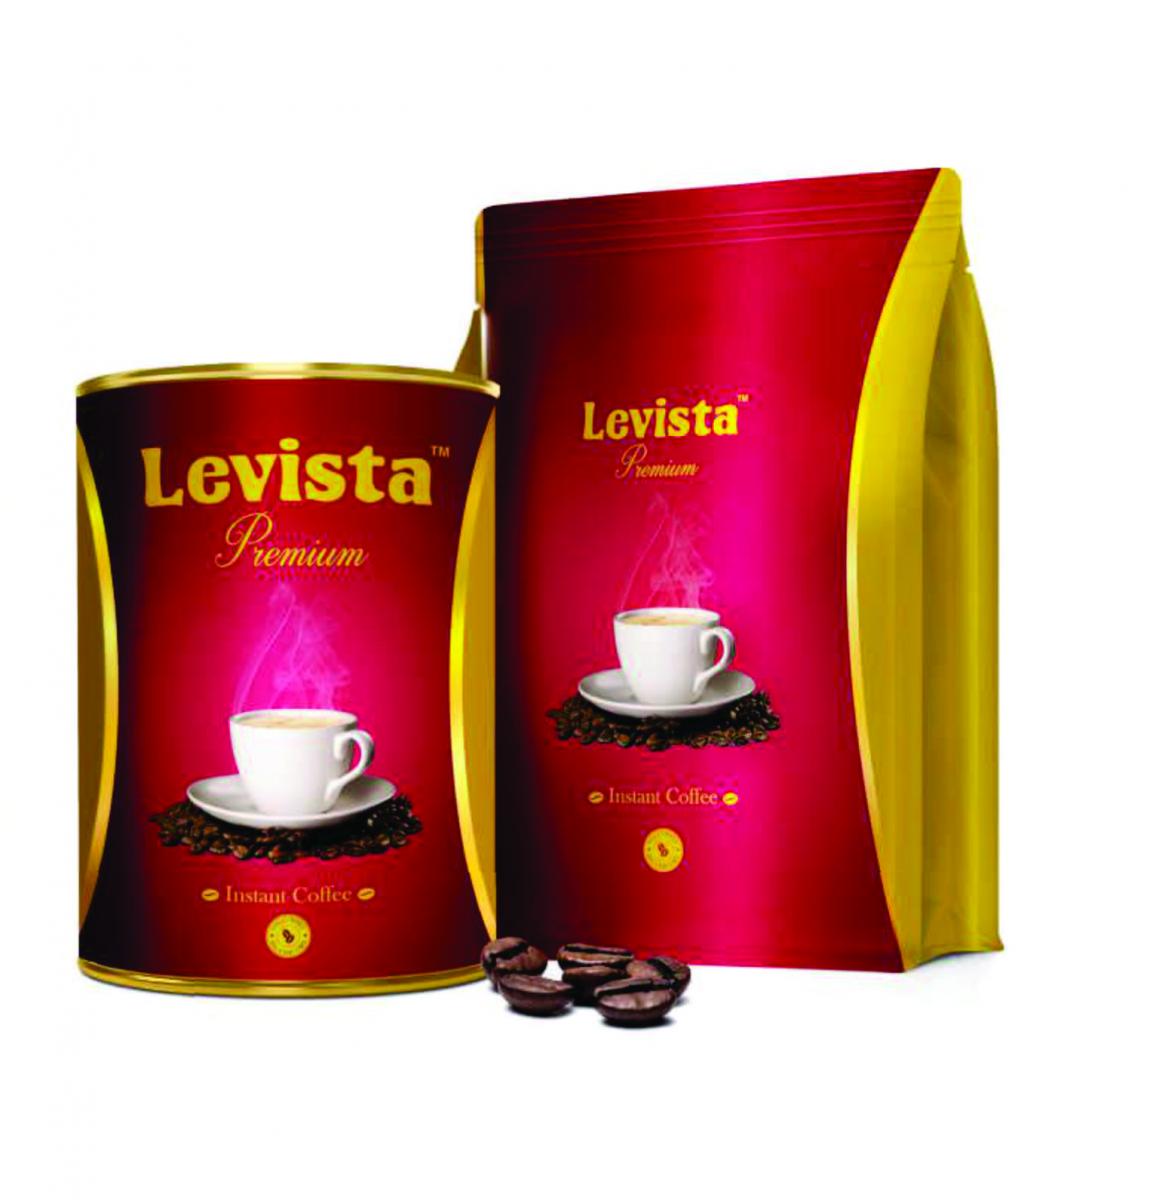 Levista Premium